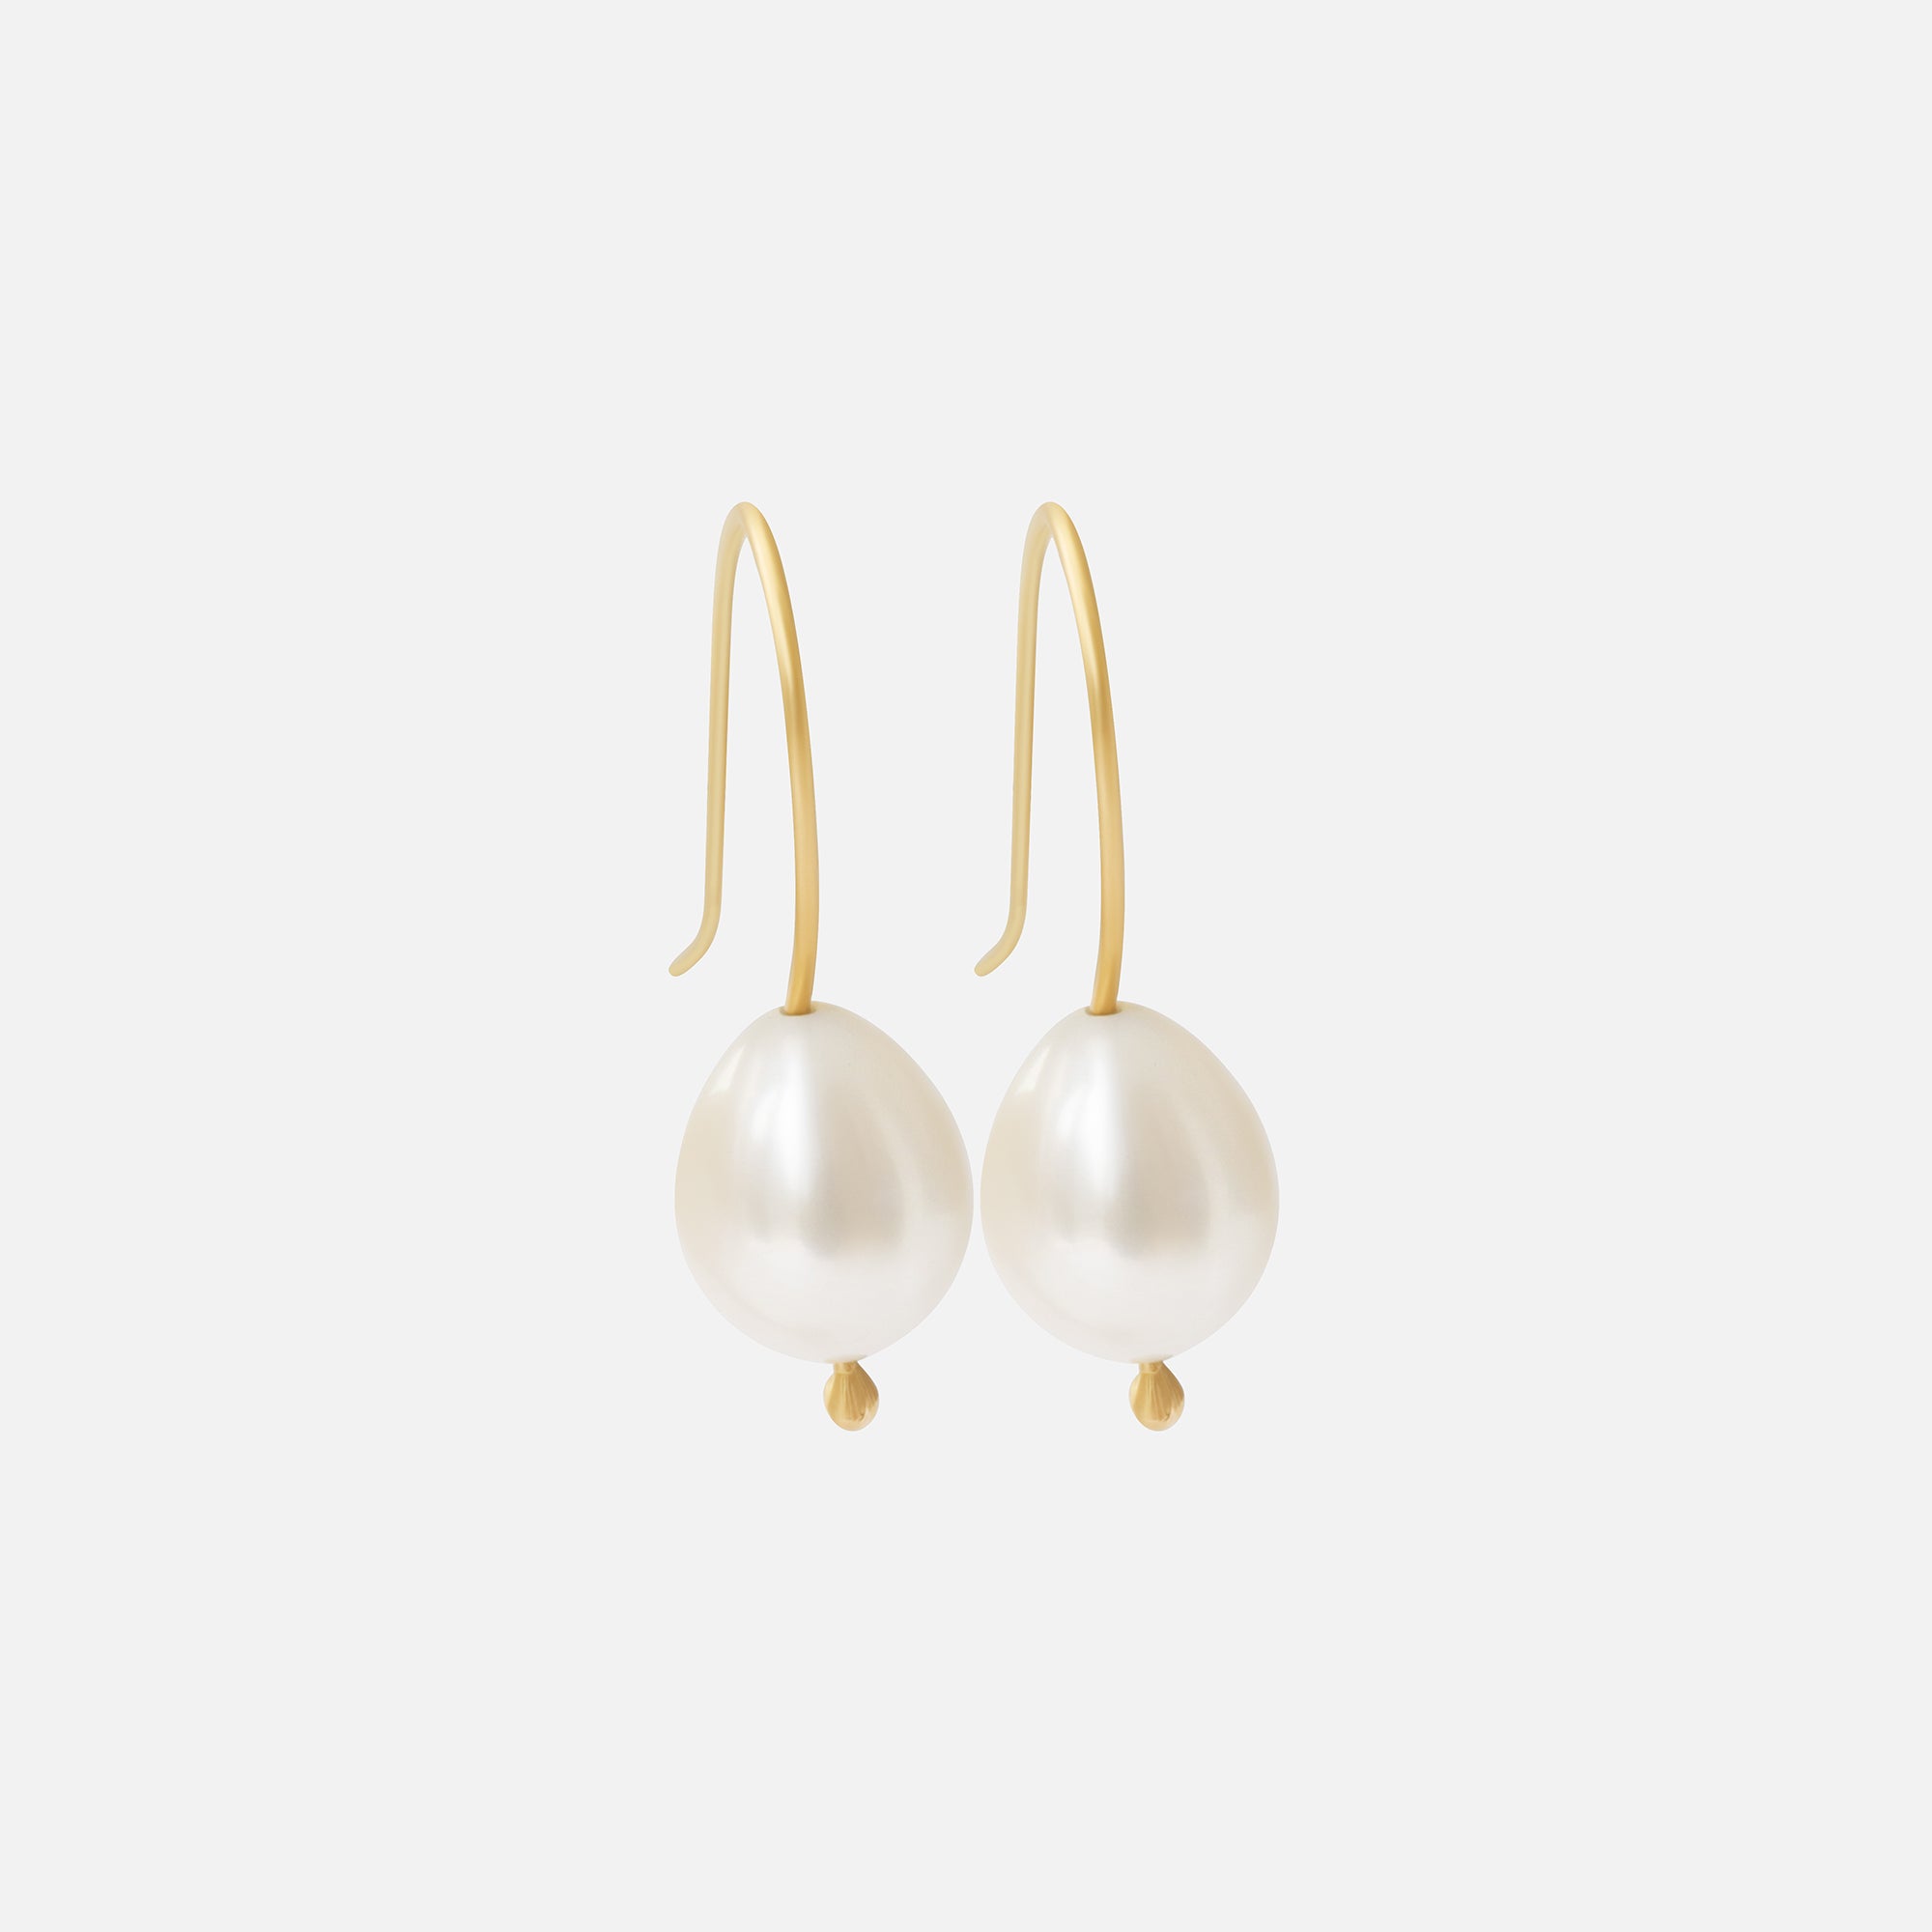 White Pearl / Drop Earrings By Tricia Kirkland in earrings Category